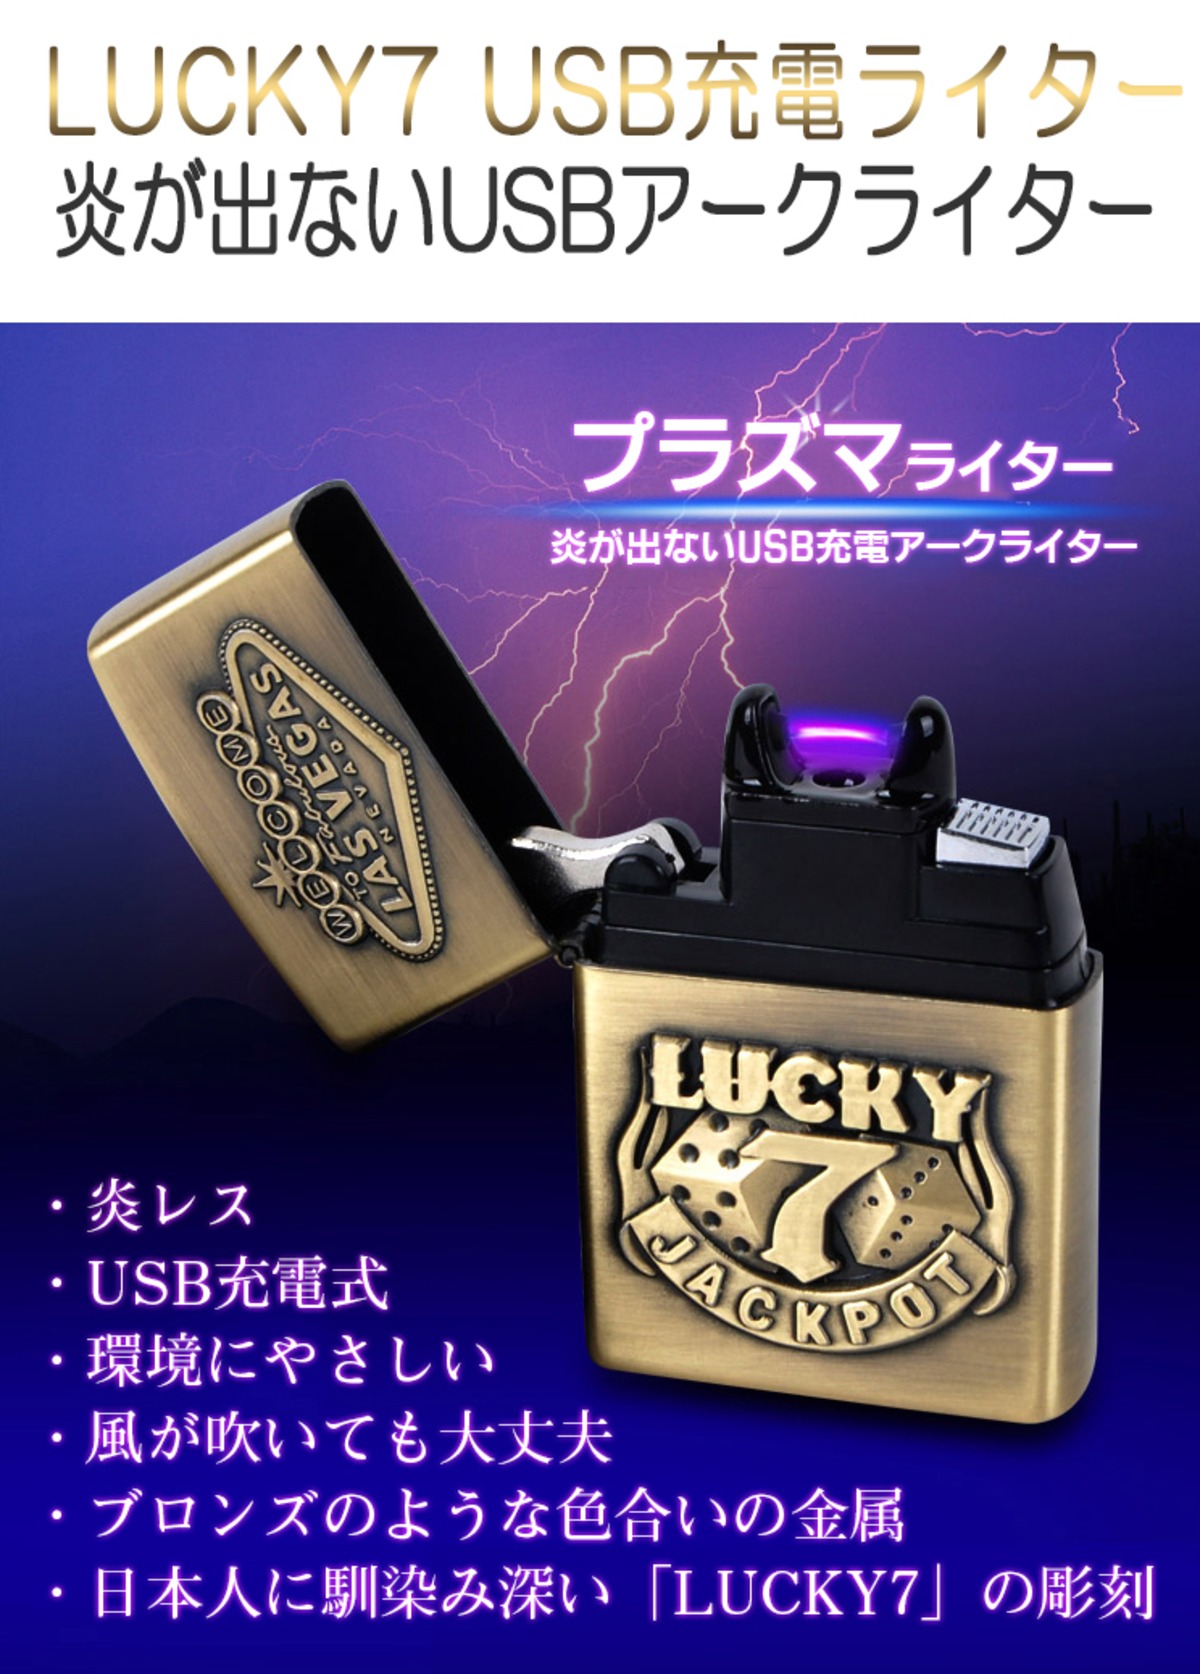 プラズマライター  金色 電子ライター USB 充電式 高級 ライター メタル製